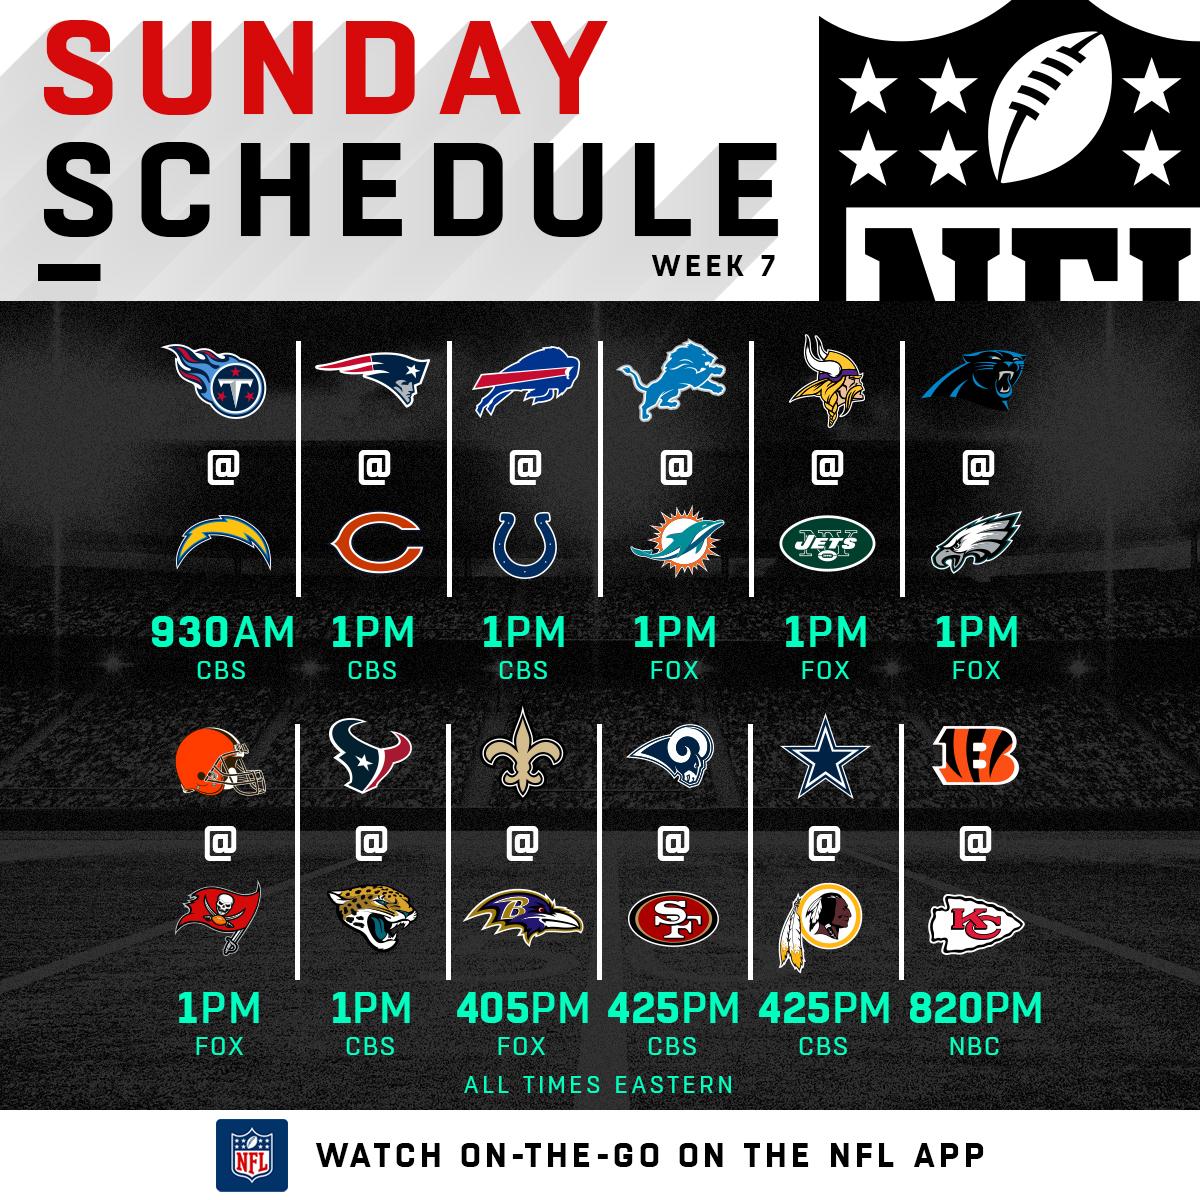 NFL Week 7 Predictions